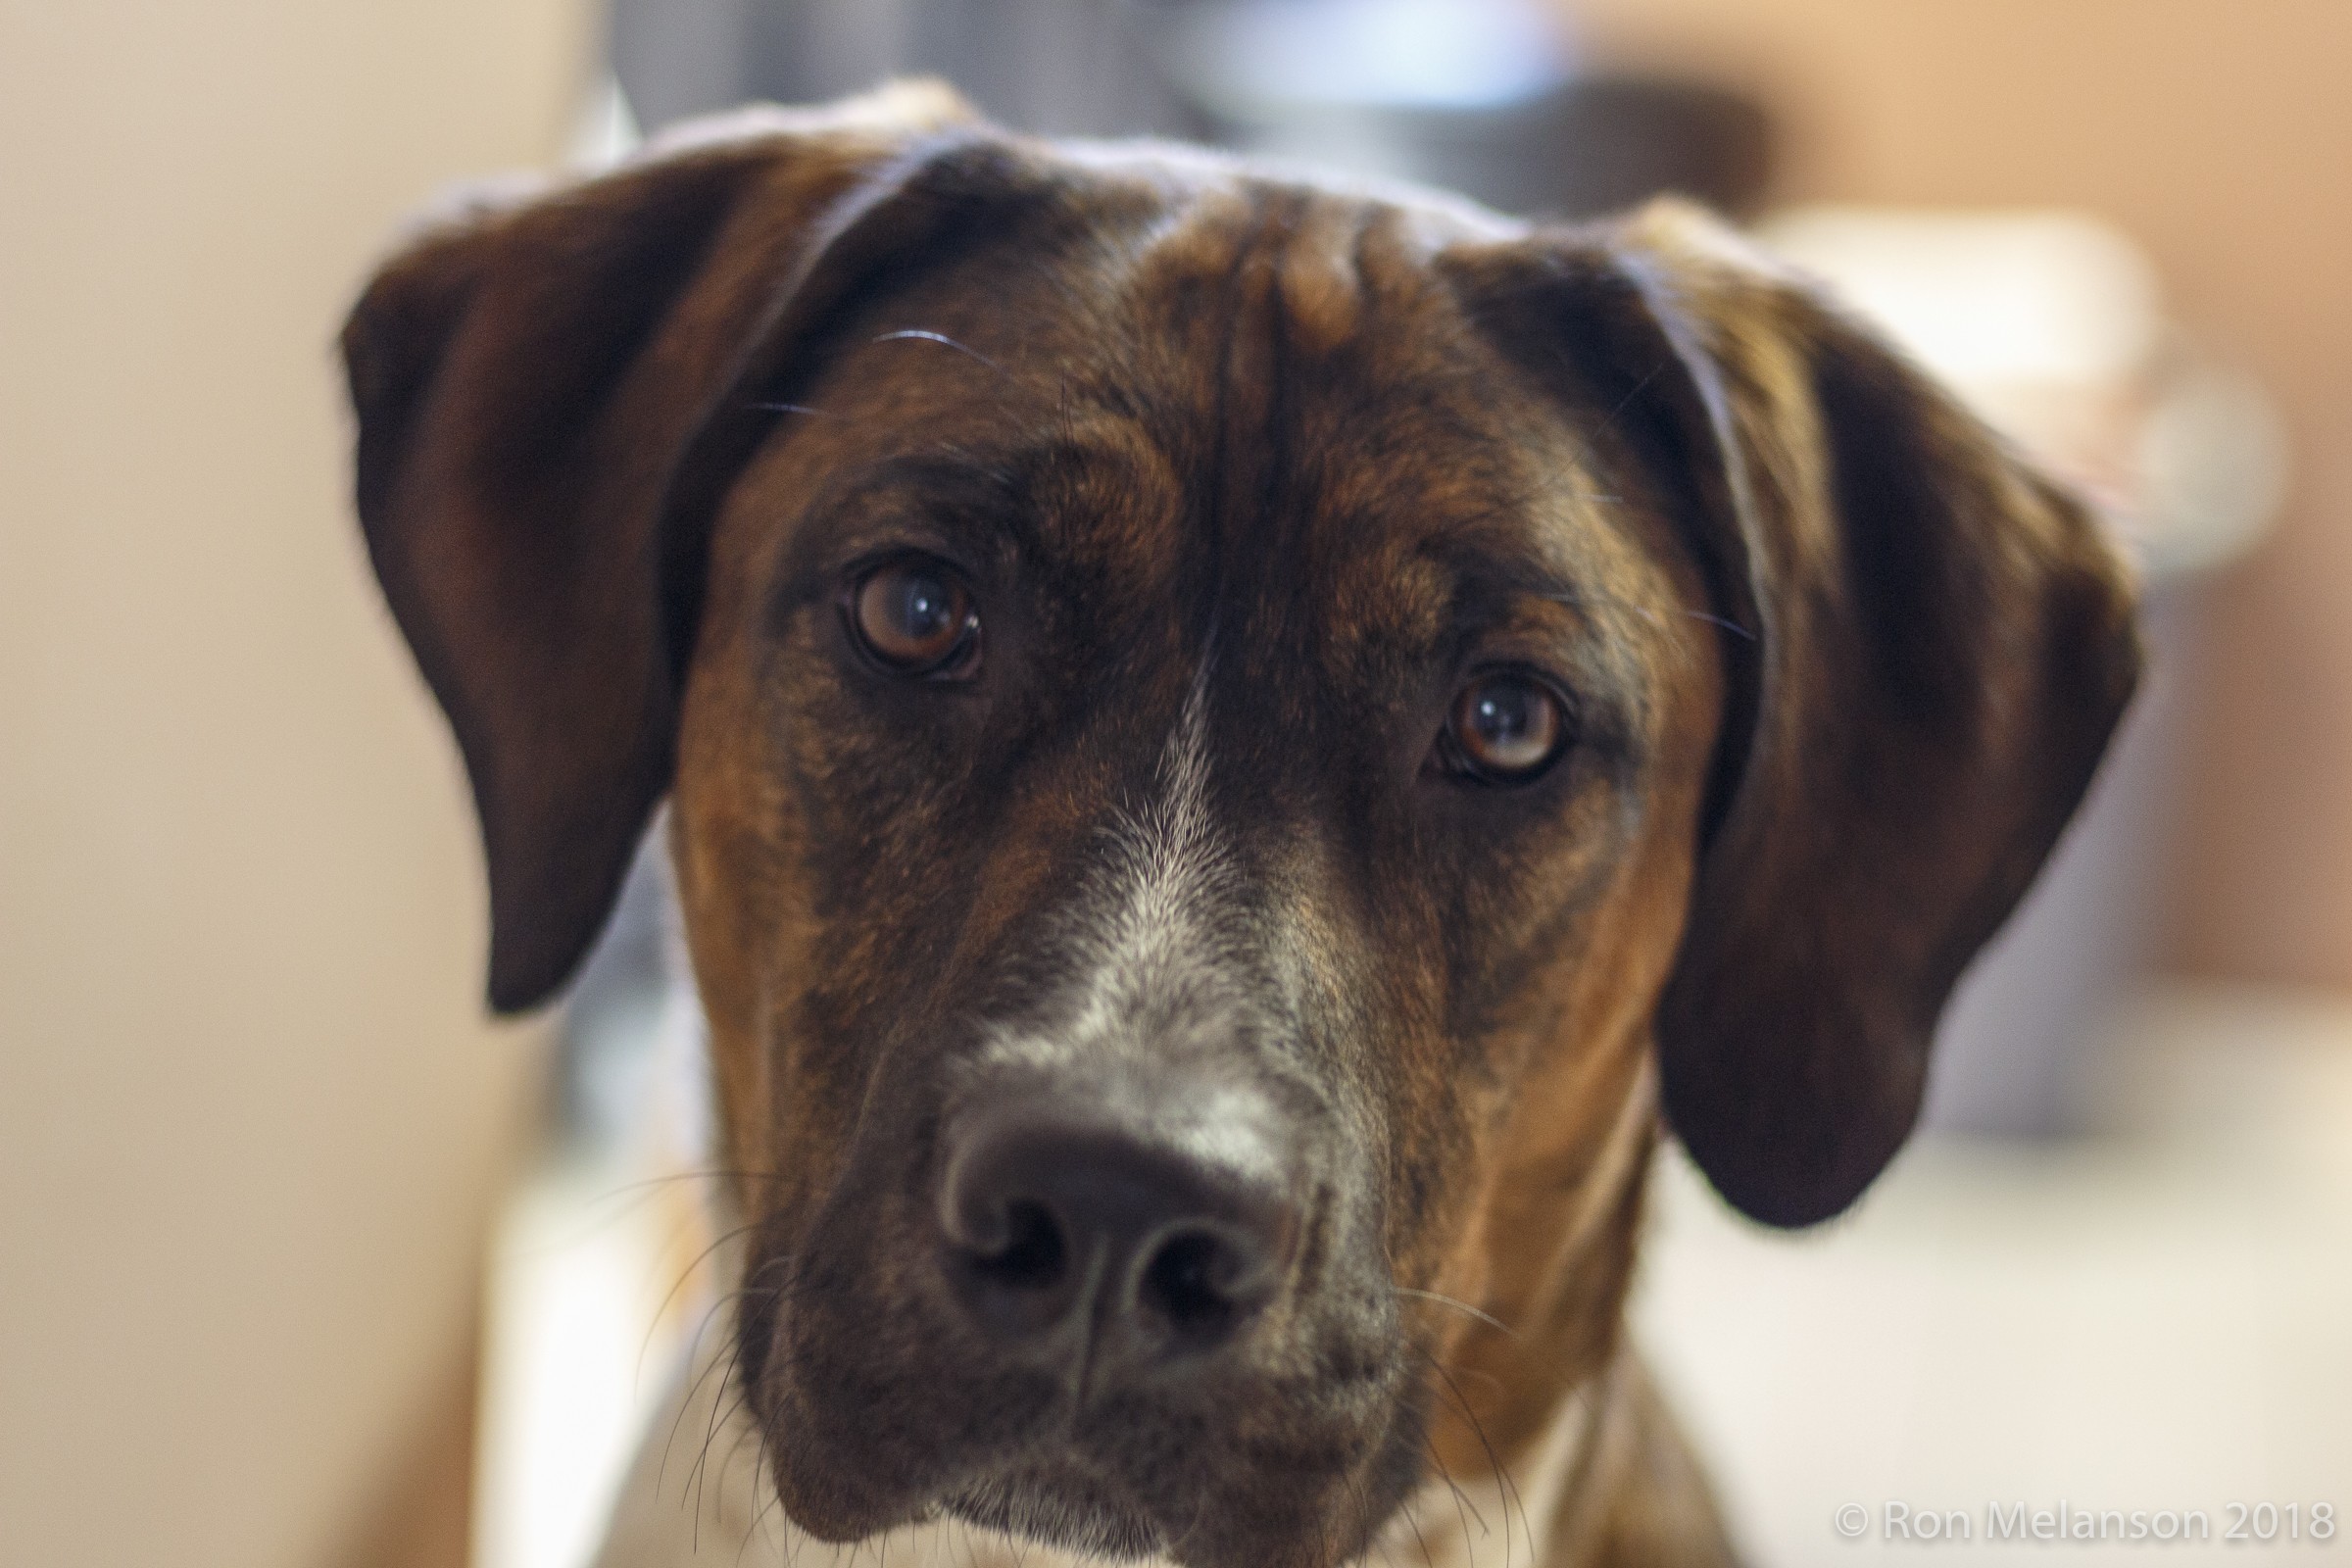 Brown dog portrait